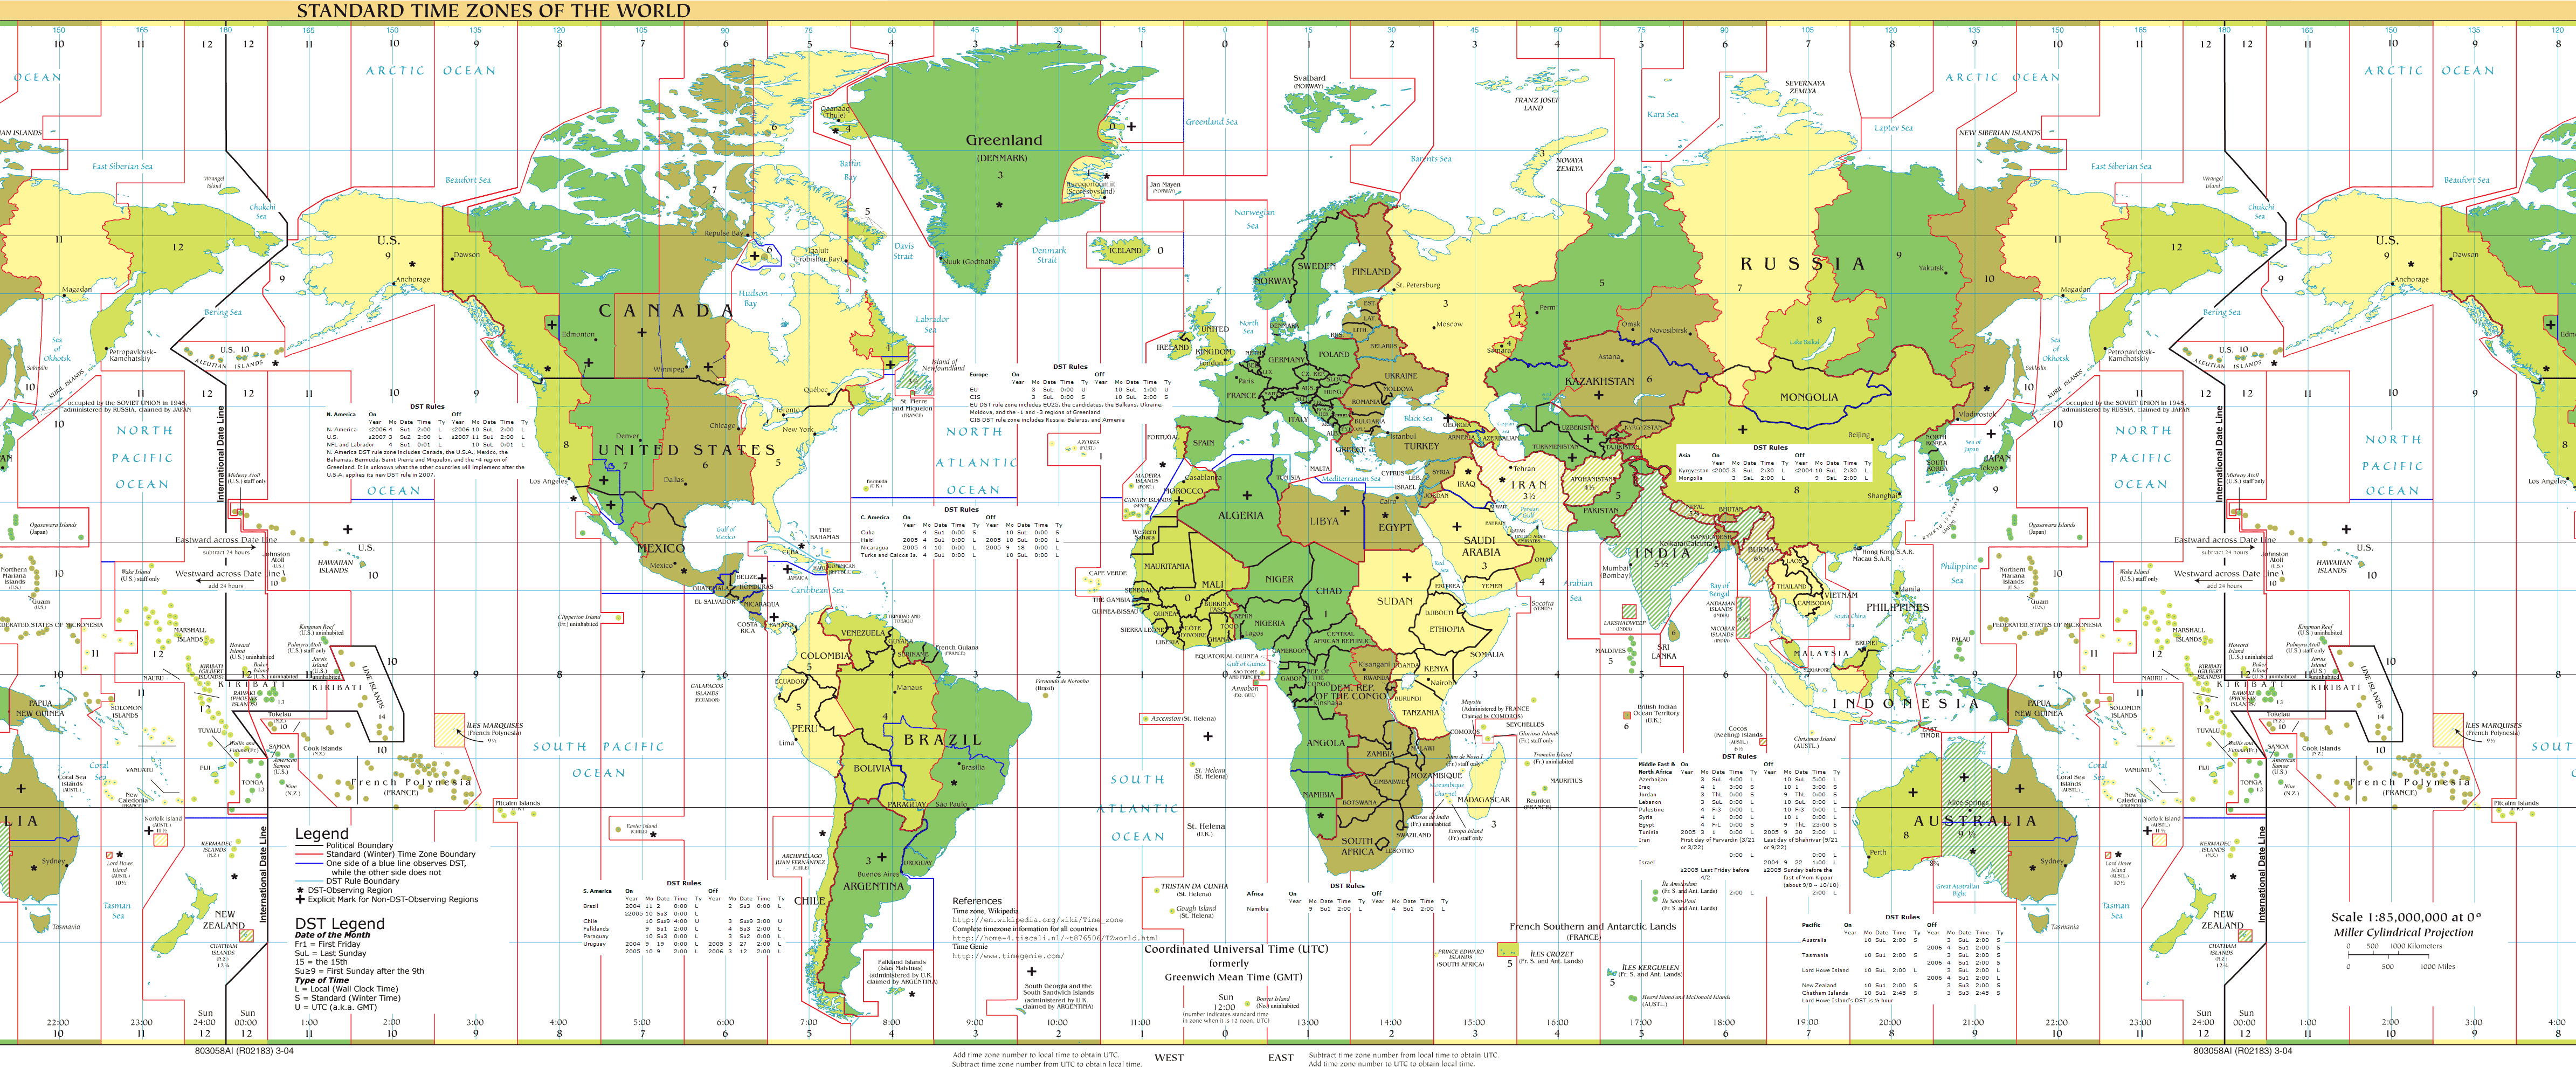 Dünya Standard Zaman Dilimi Harita